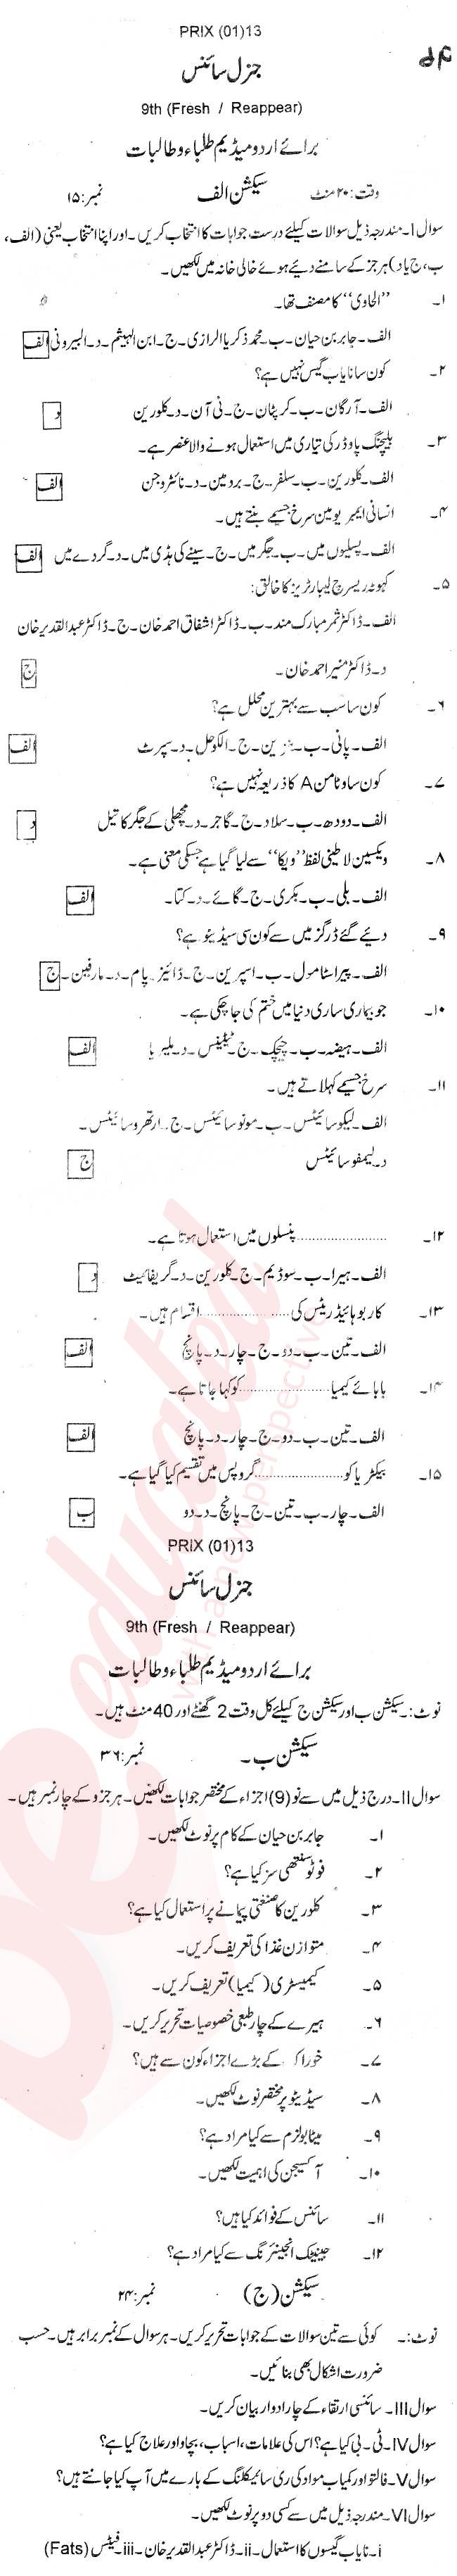 General Science 9th Urdu Medium Past Paper Group 1 BISE Swat 2013